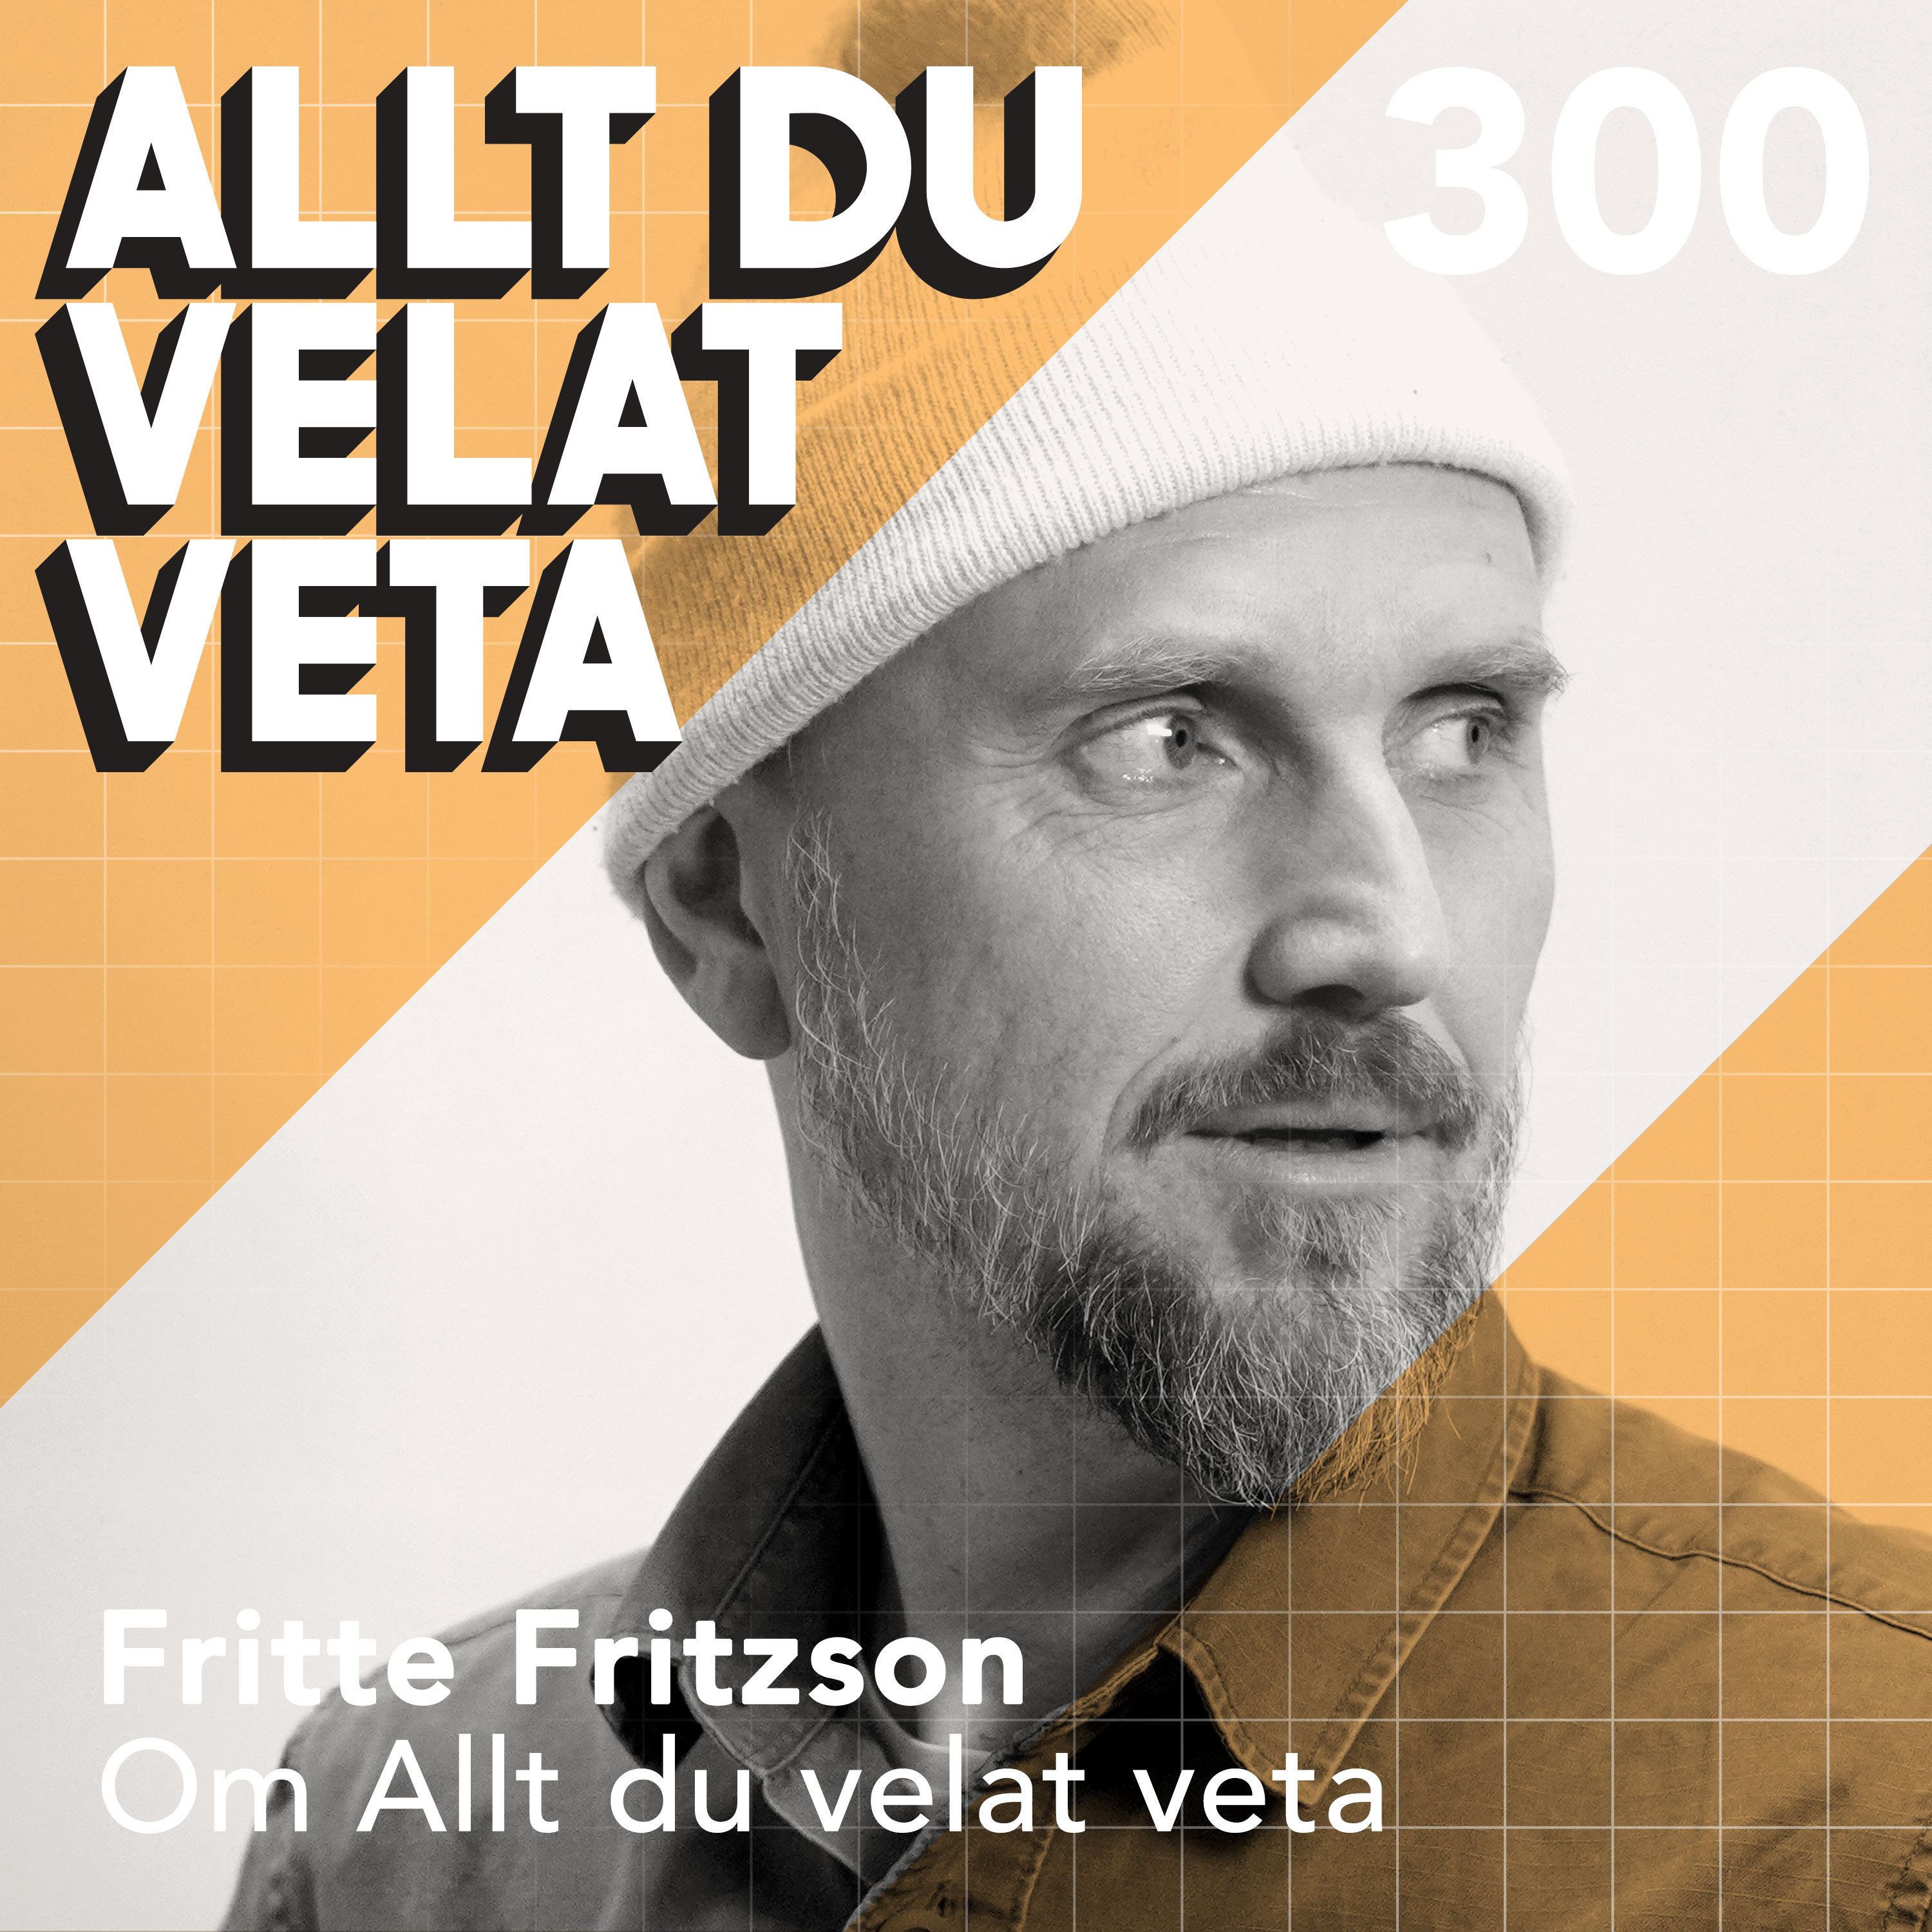 300 Om Allt du velat veta med Fritte Fritzson